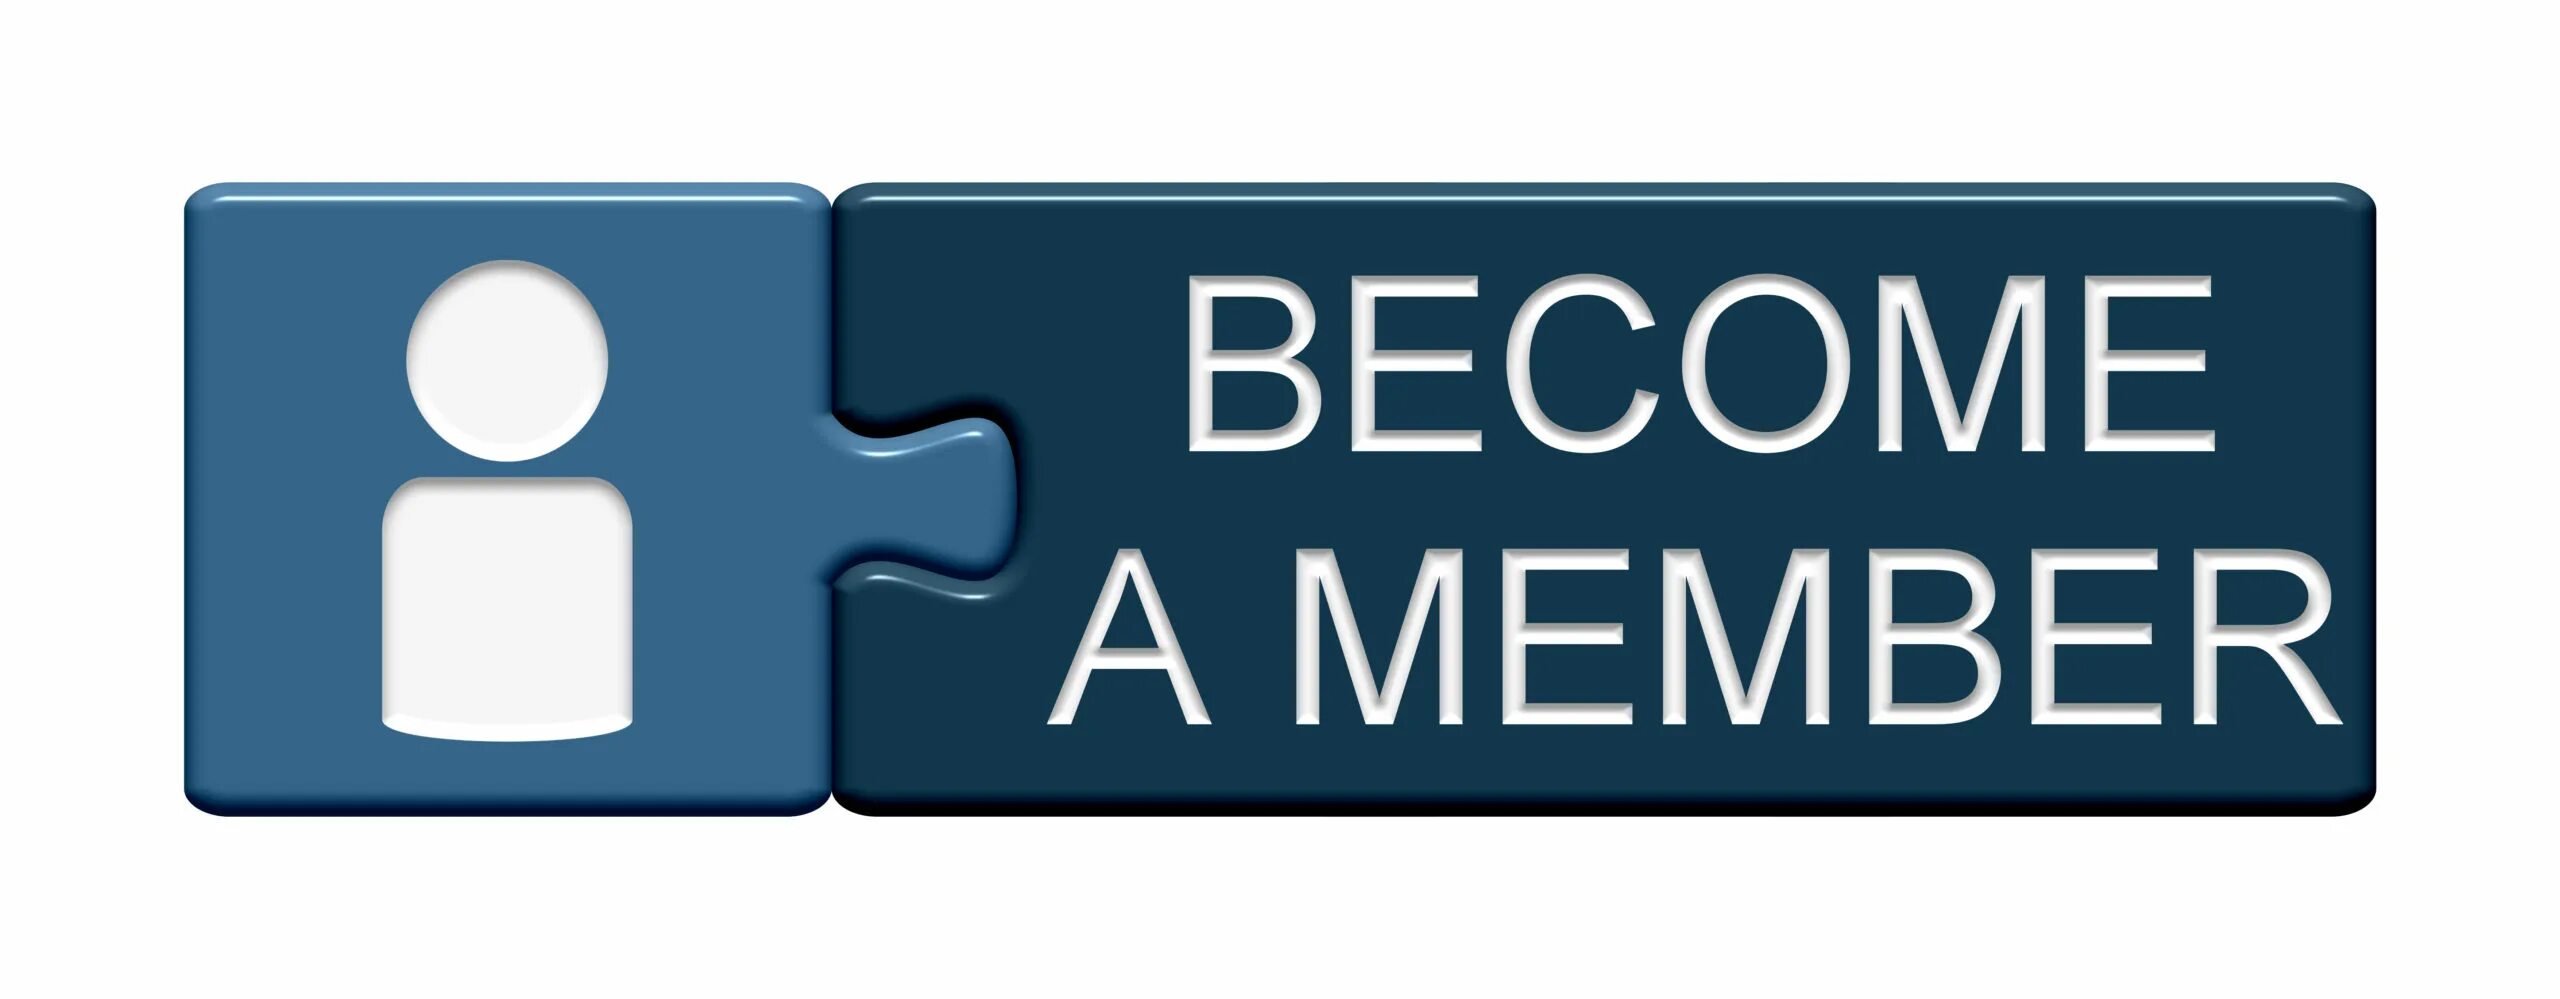 Member картинки. Стать дилером кнопка. Присоединяйся иконка. Become a member